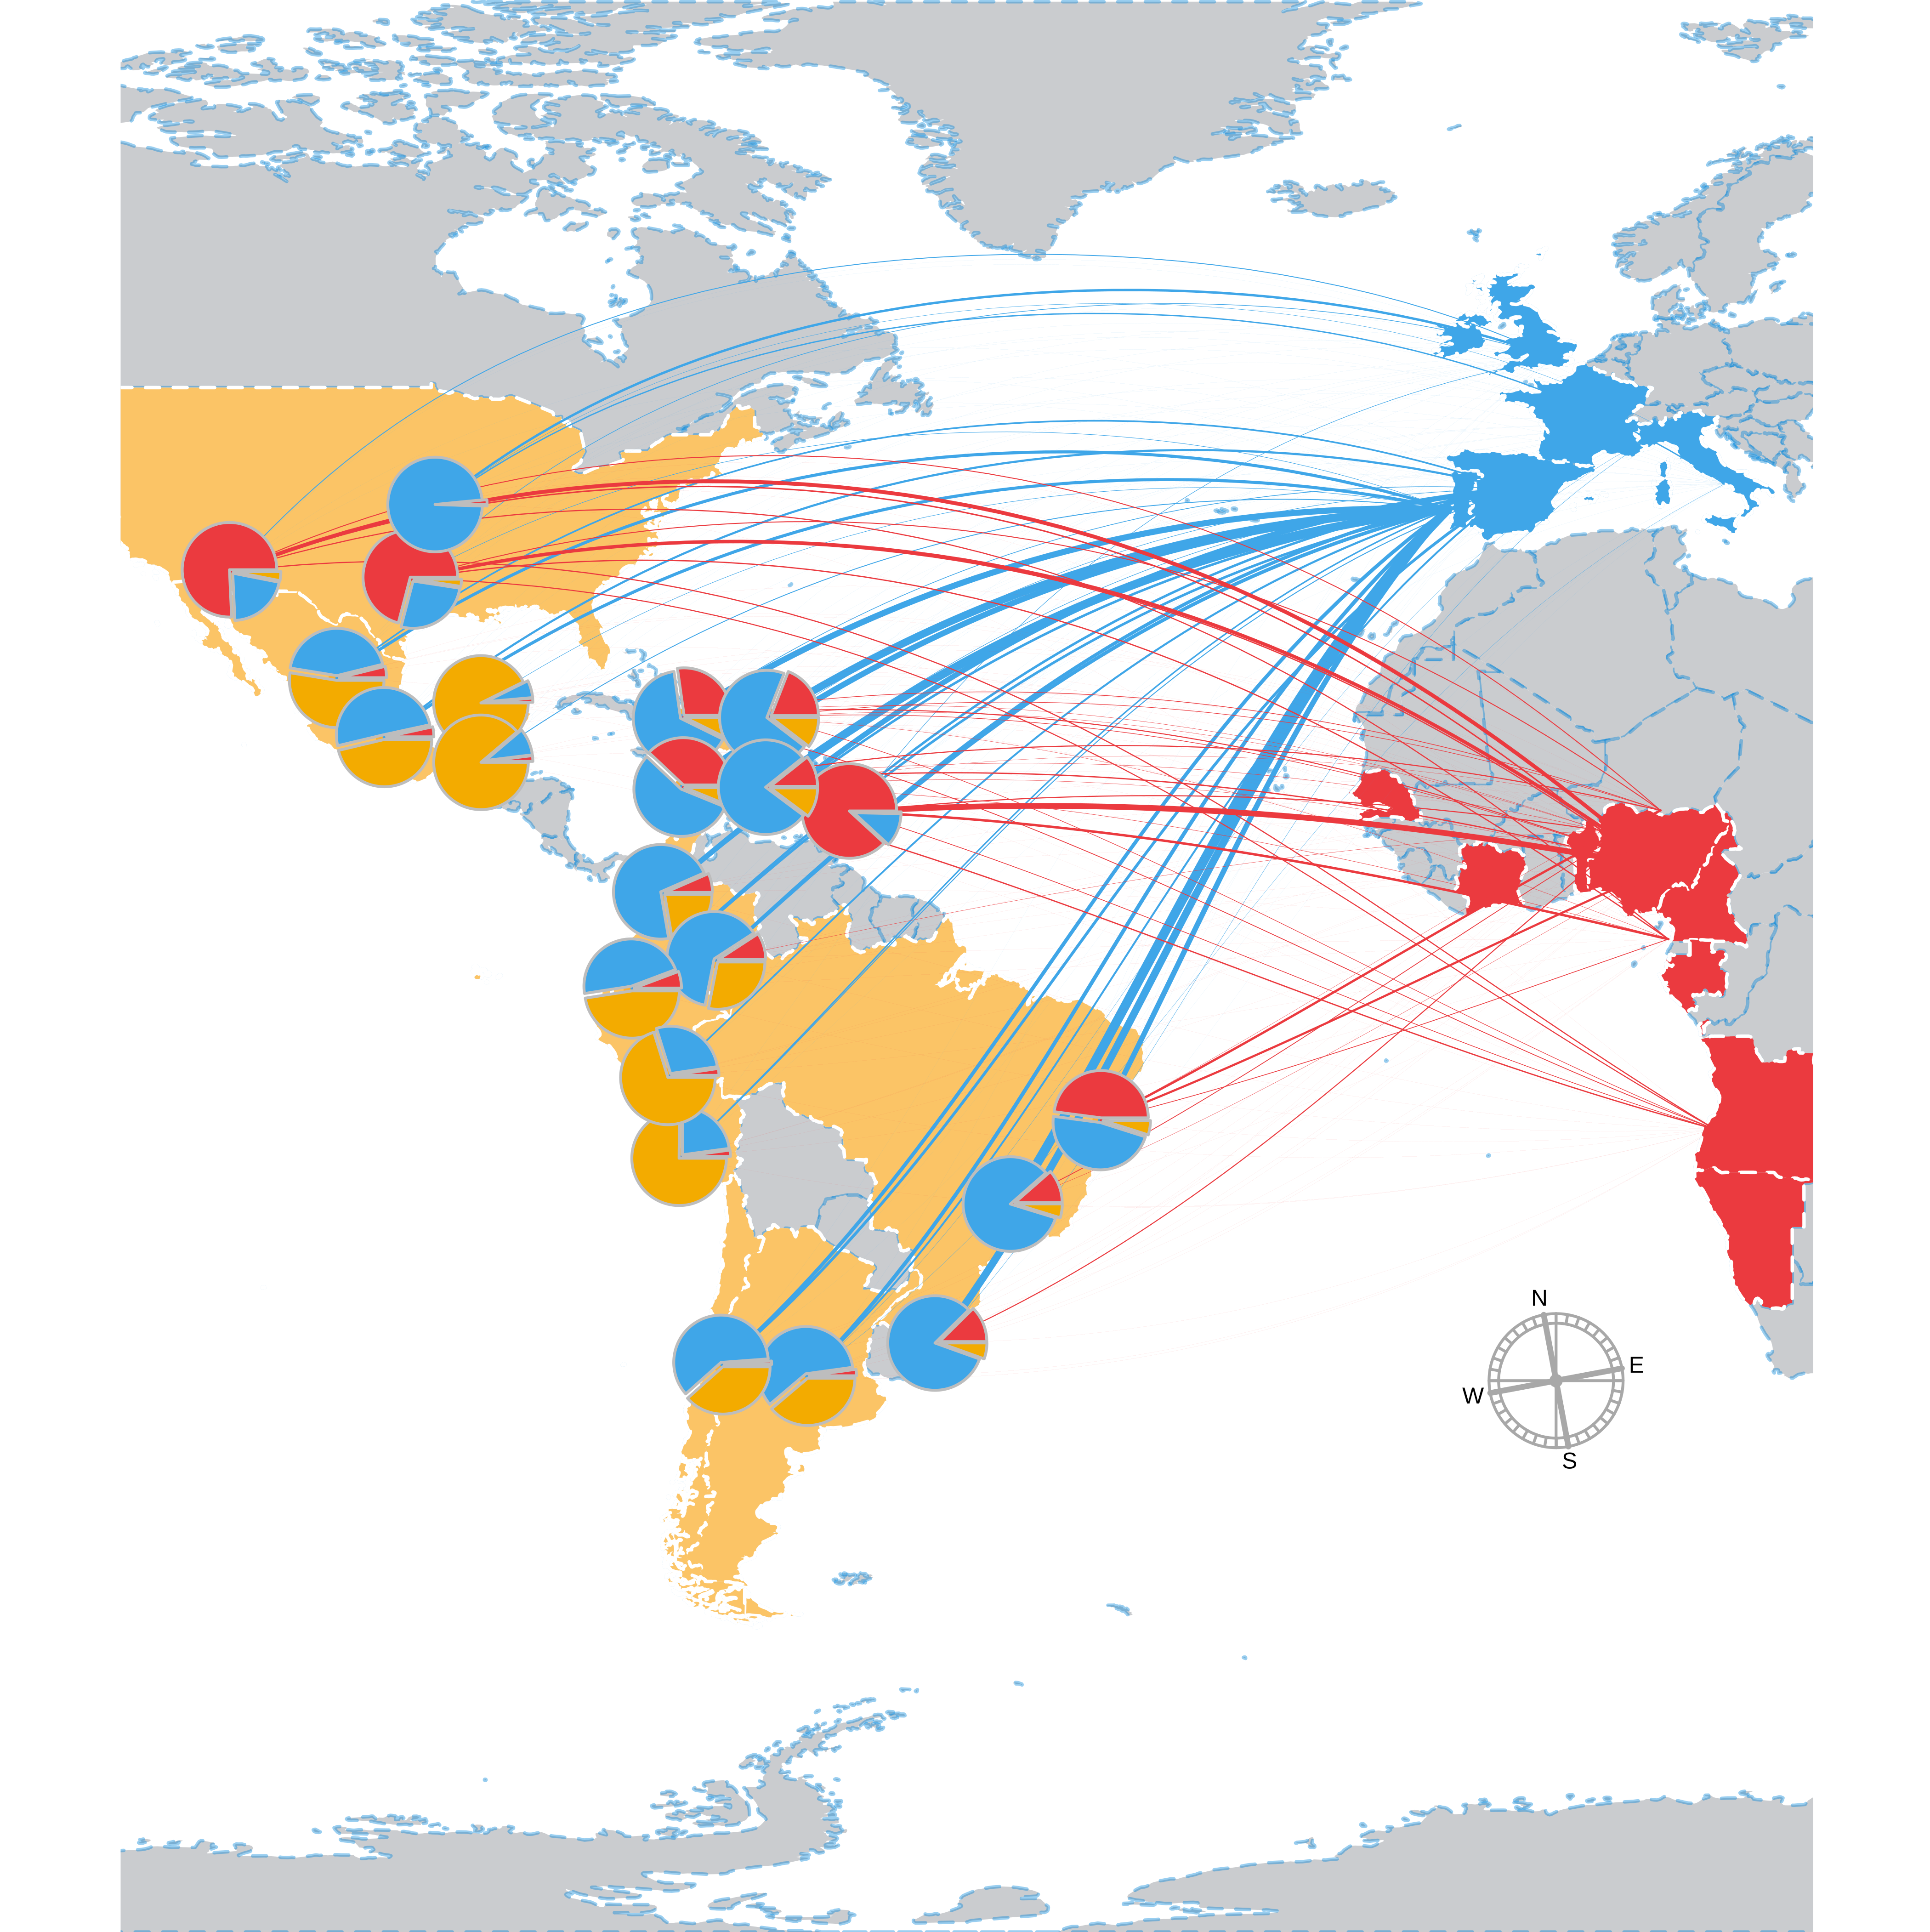 European Expansion Into The Americas Analysis